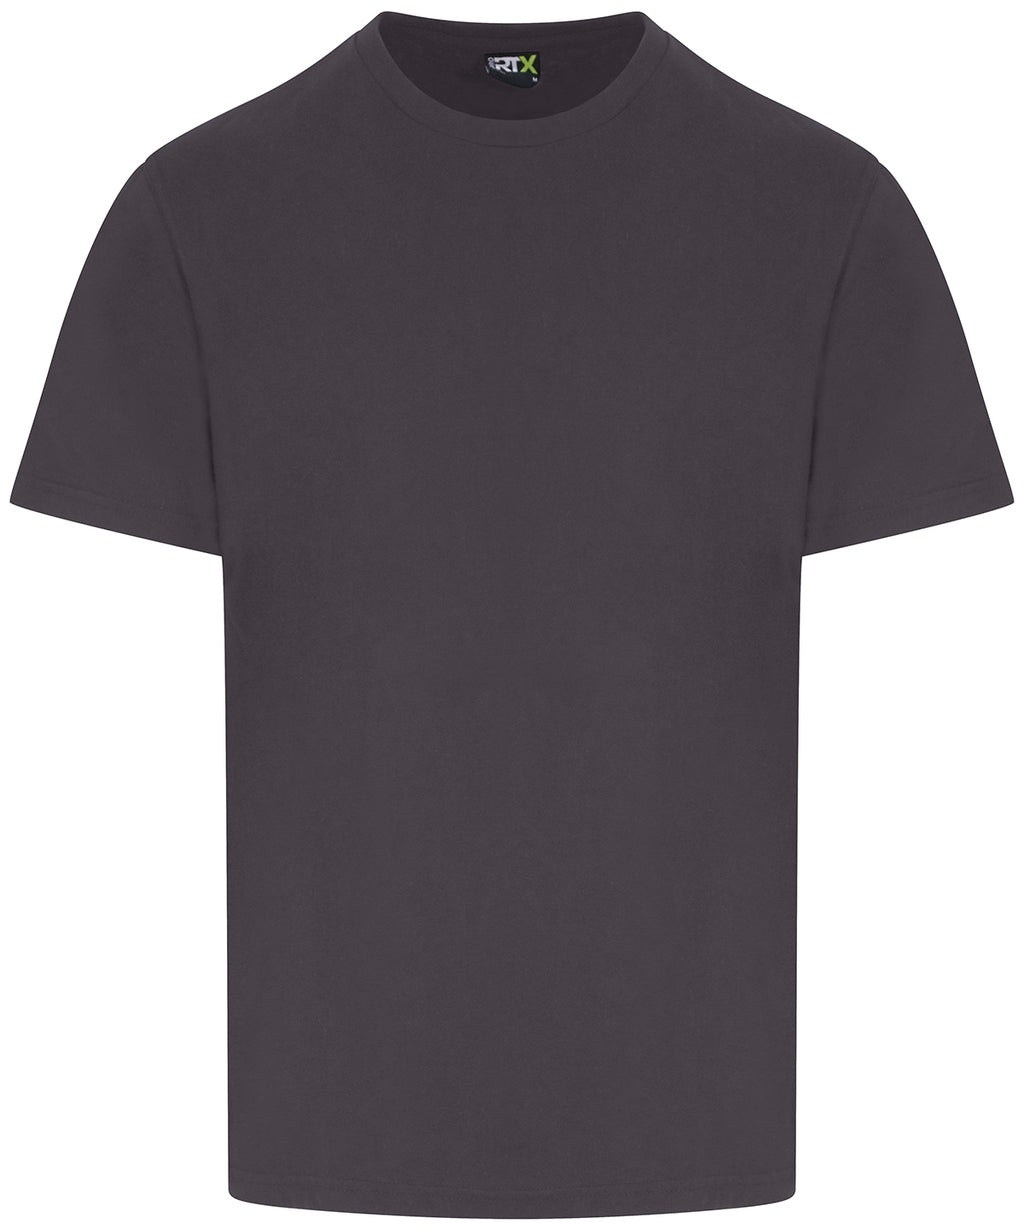 Mens Plain T-Shirt - Slate Grey